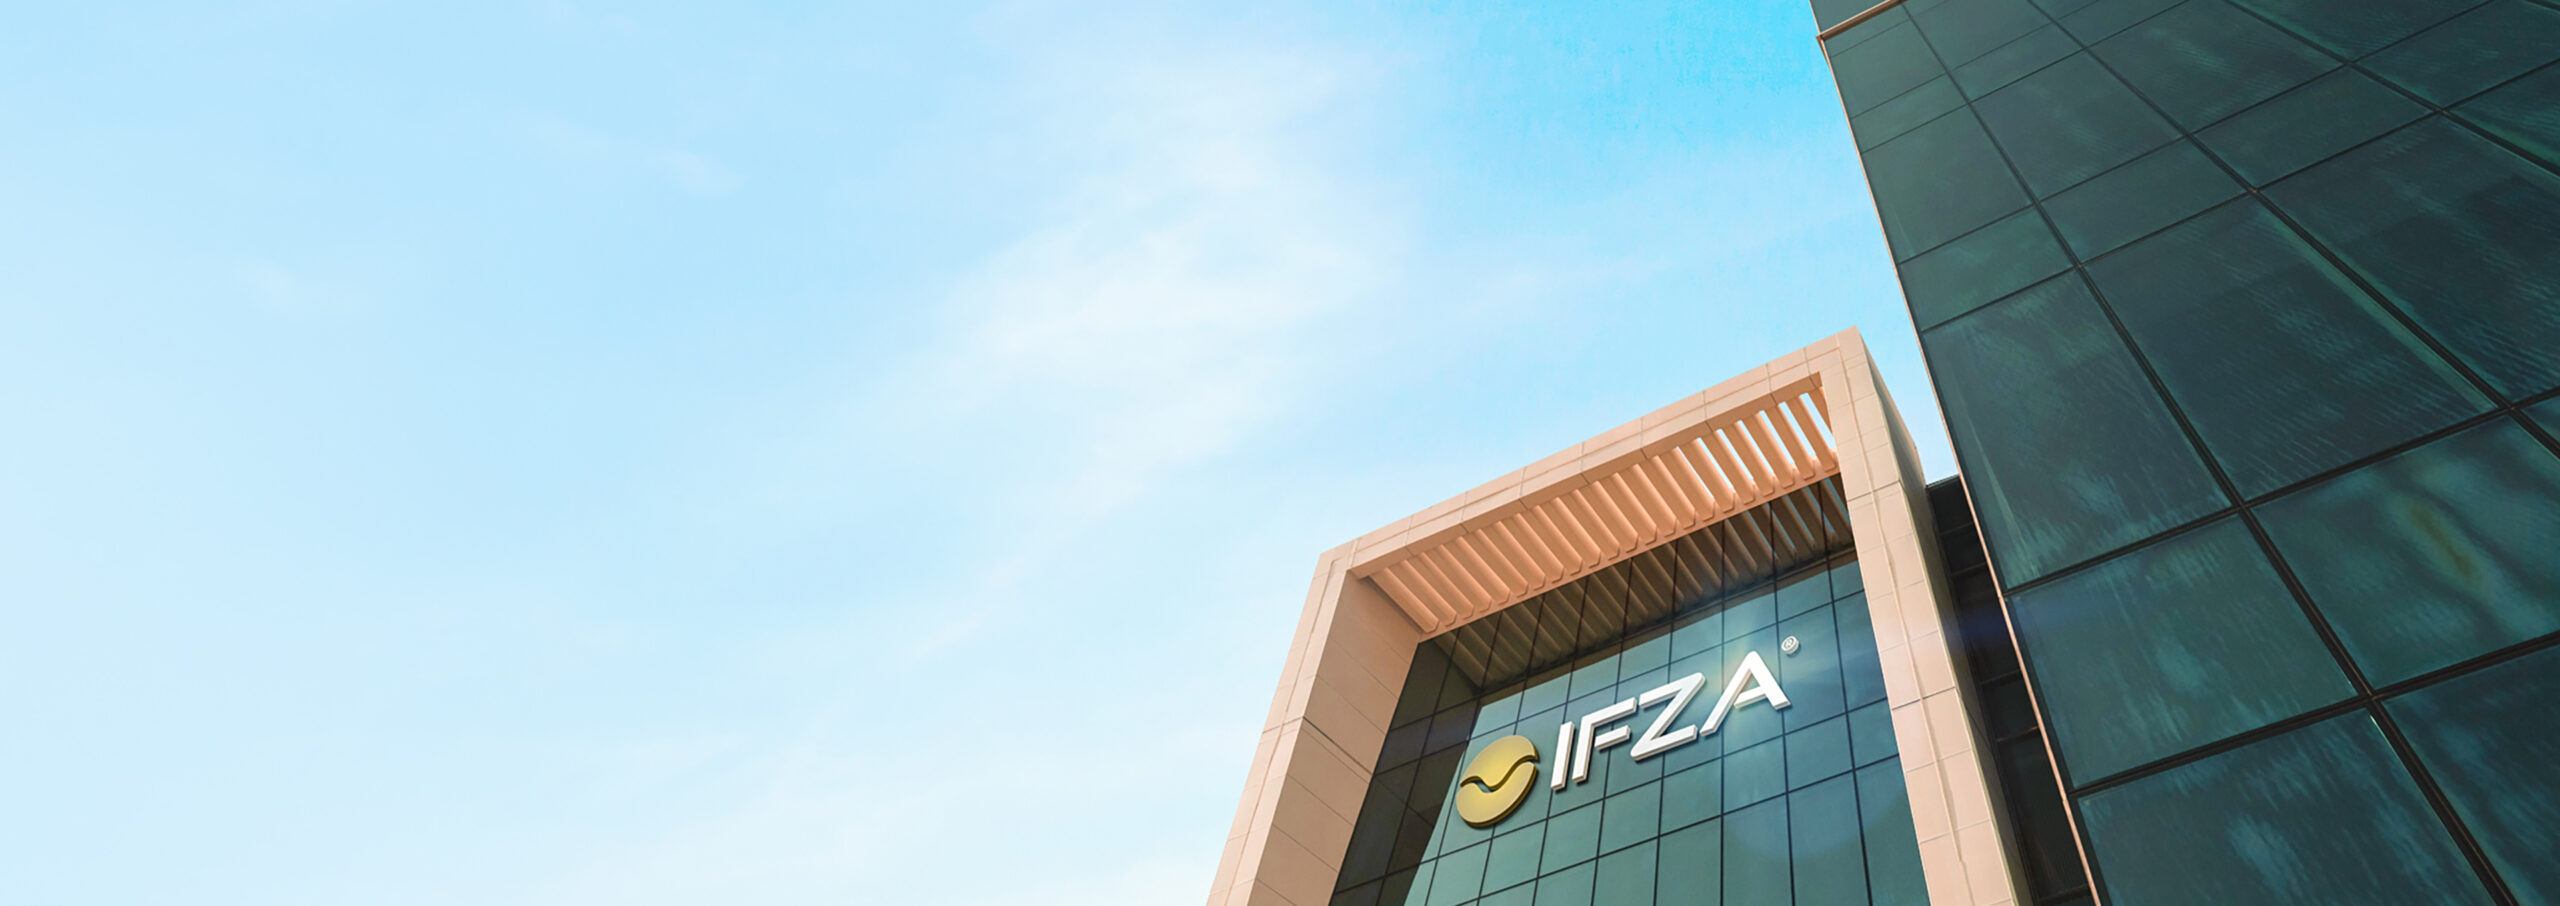 IFZA Free Zone Dubai